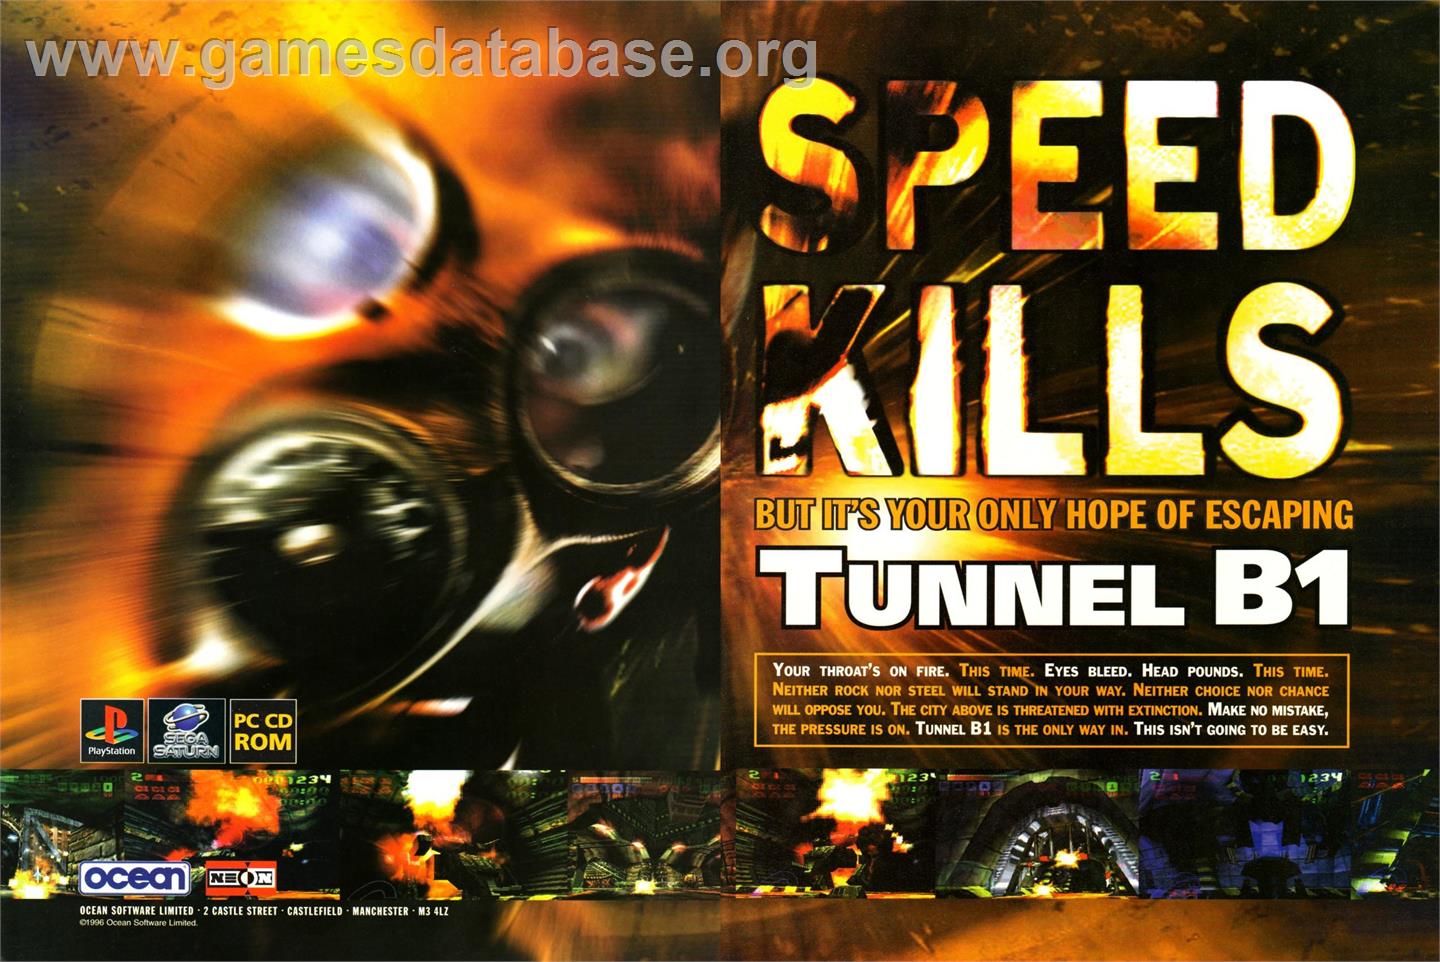 Tunnel B1 - Sony Playstation - Artwork - Advert